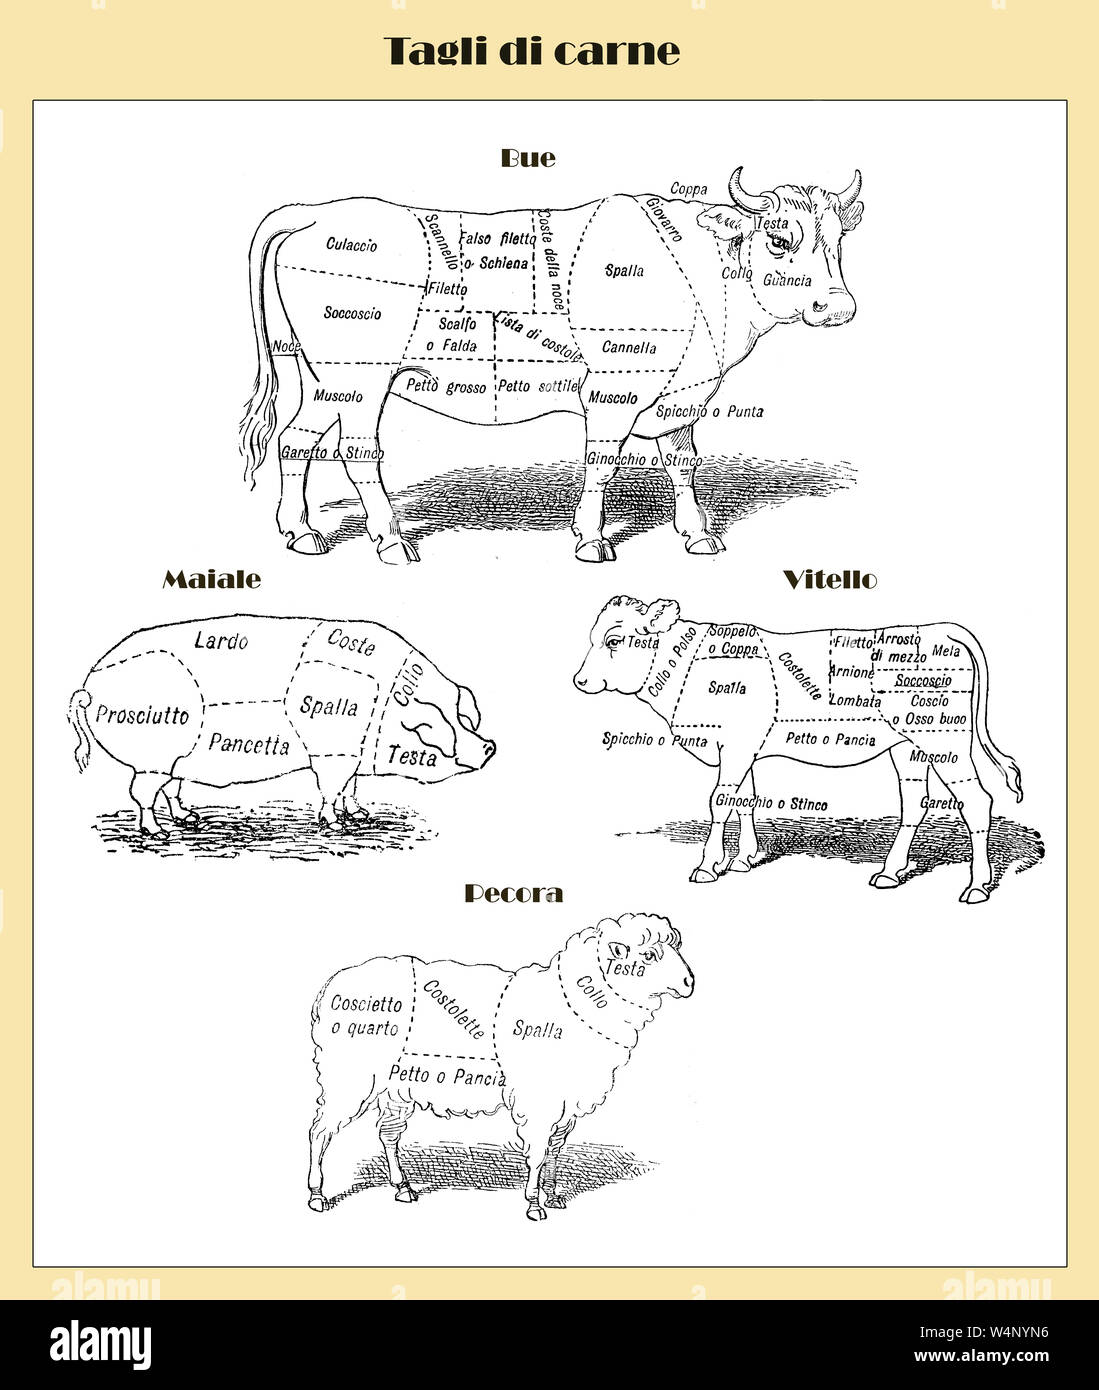 Butcher carrello: tagli di carne con nomi italiani per la carne di manzo, vitello, maiale e pecora da un lessico inizio '900 Foto Stock